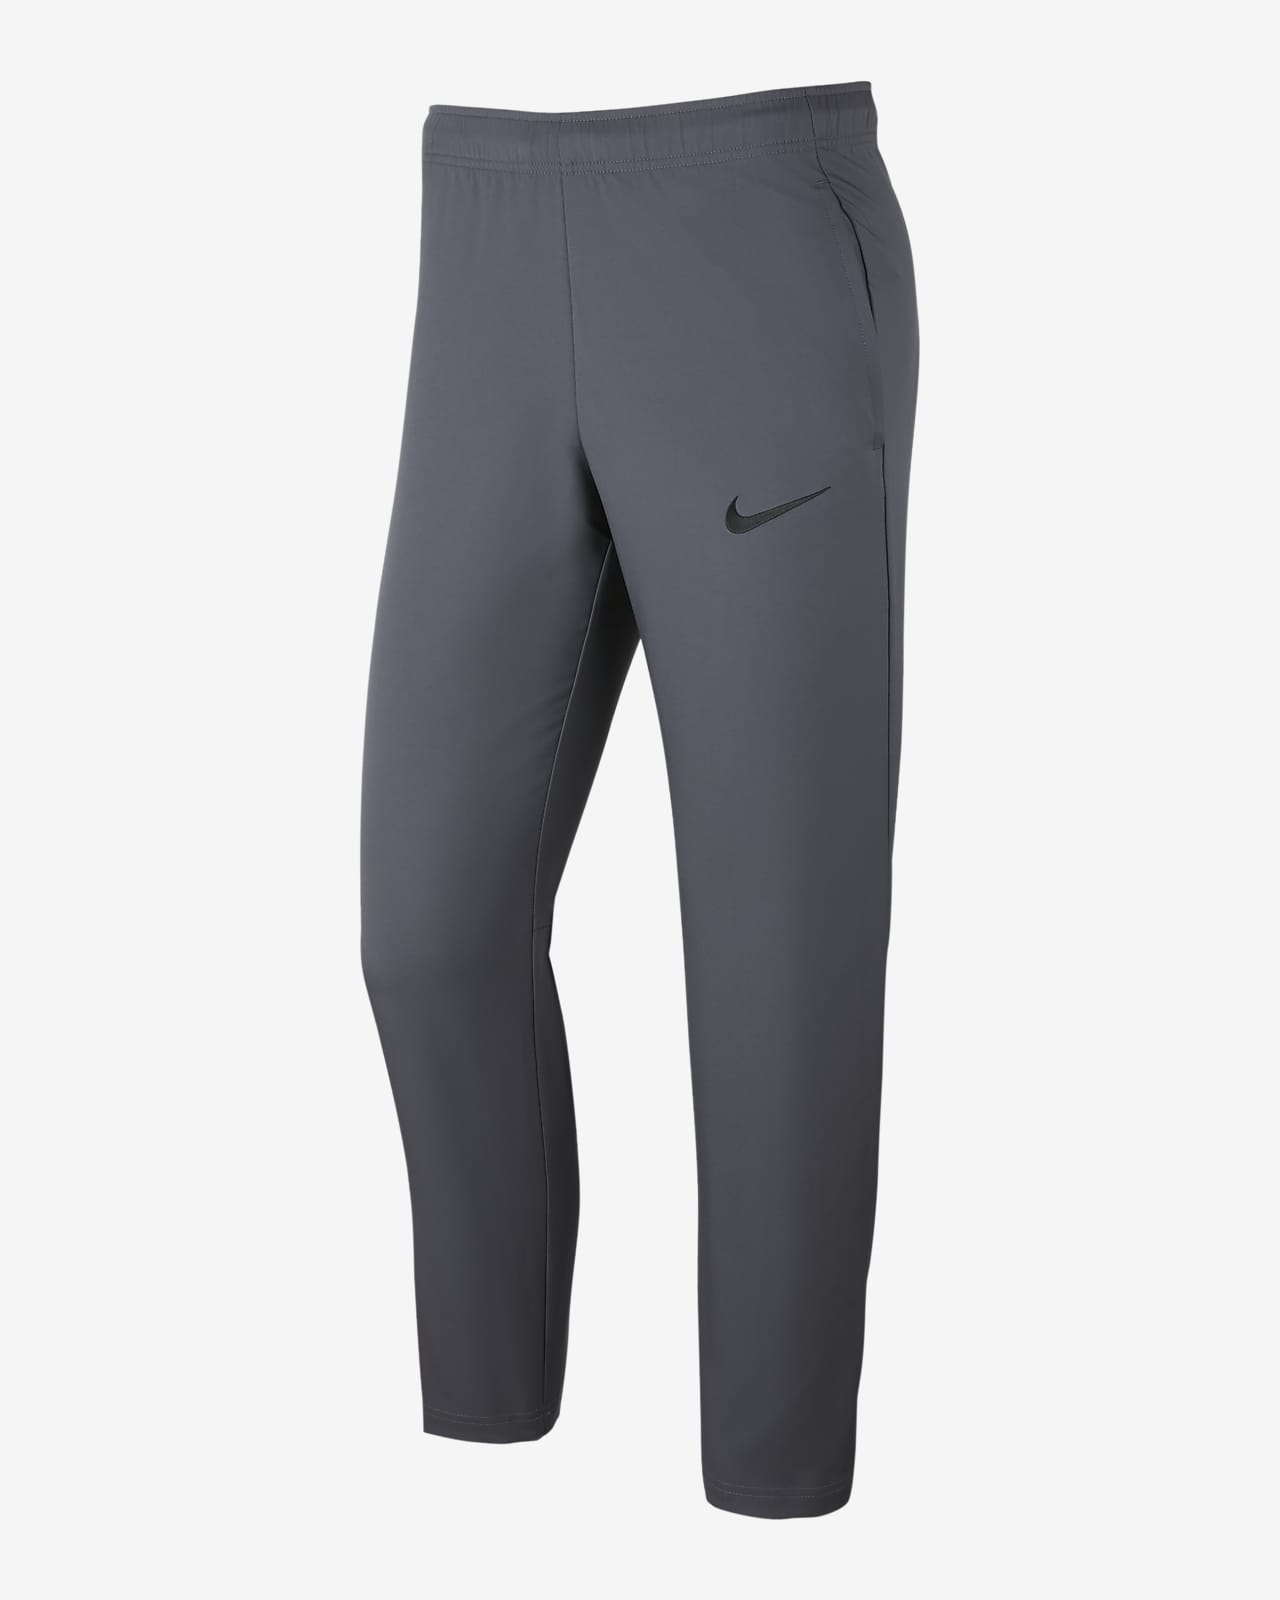 Nike Dri-FIT Men's Woven Training Pants 